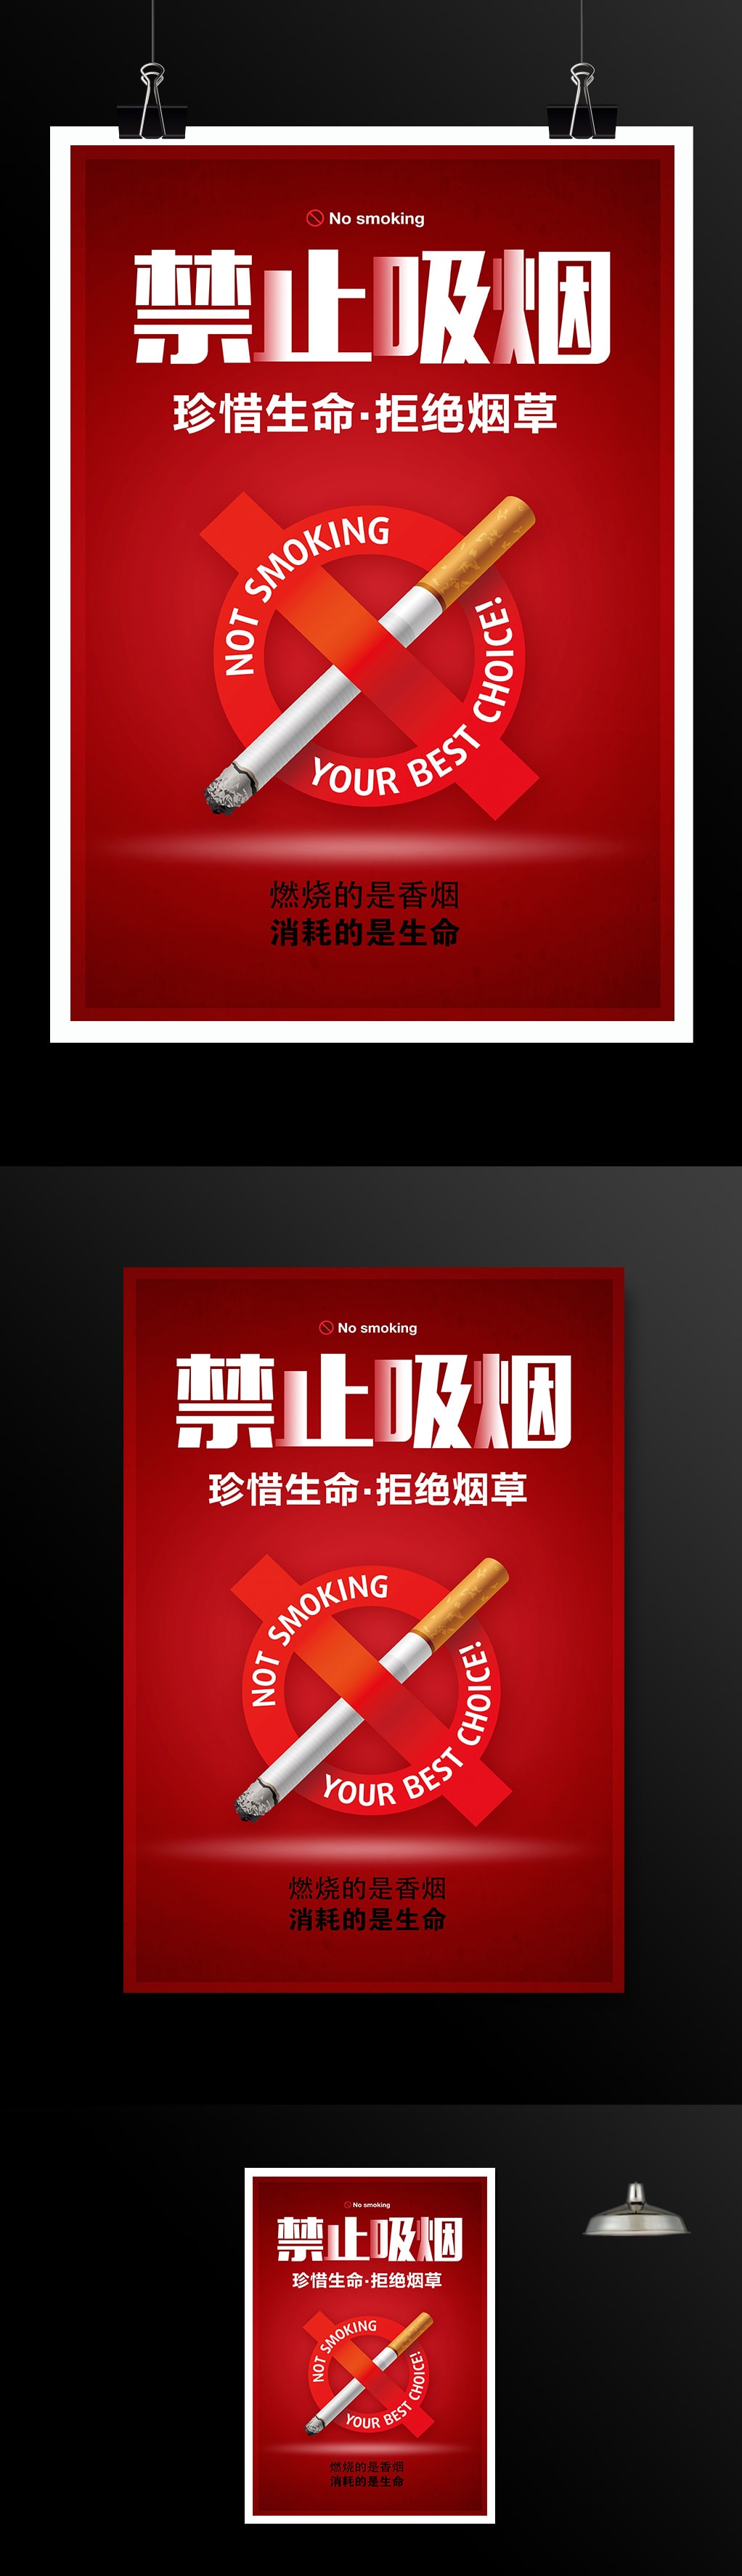 禁止吸烟世界无烟日公益宣传海报